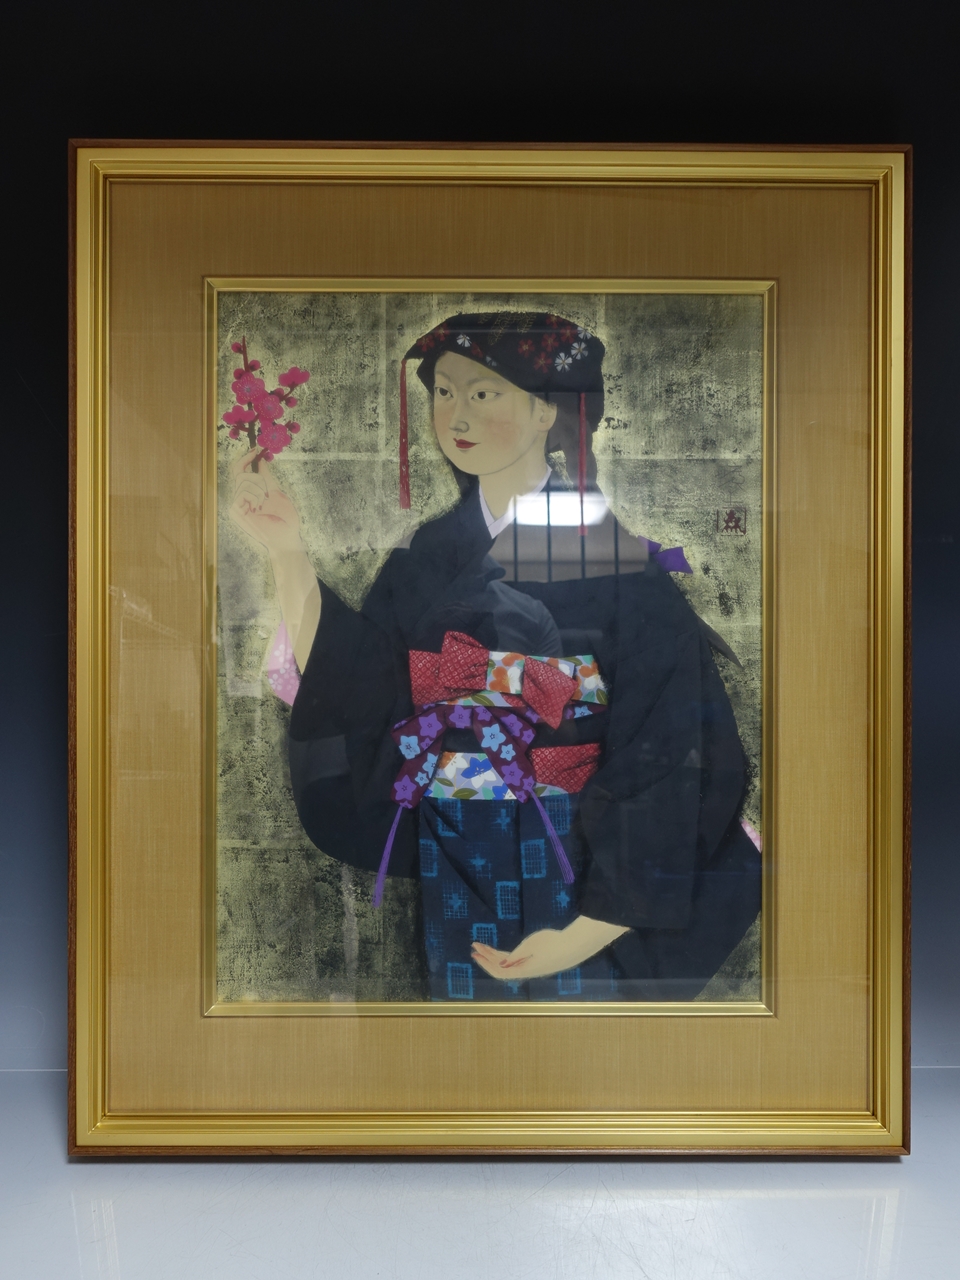 【日本画】森田曠平 「洛北おとめ」を買取り致しました。 | 骨董品高価買取 ひるねこ堂 | 関西 尼崎での骨董品・美術品の高価買取はお任せください。